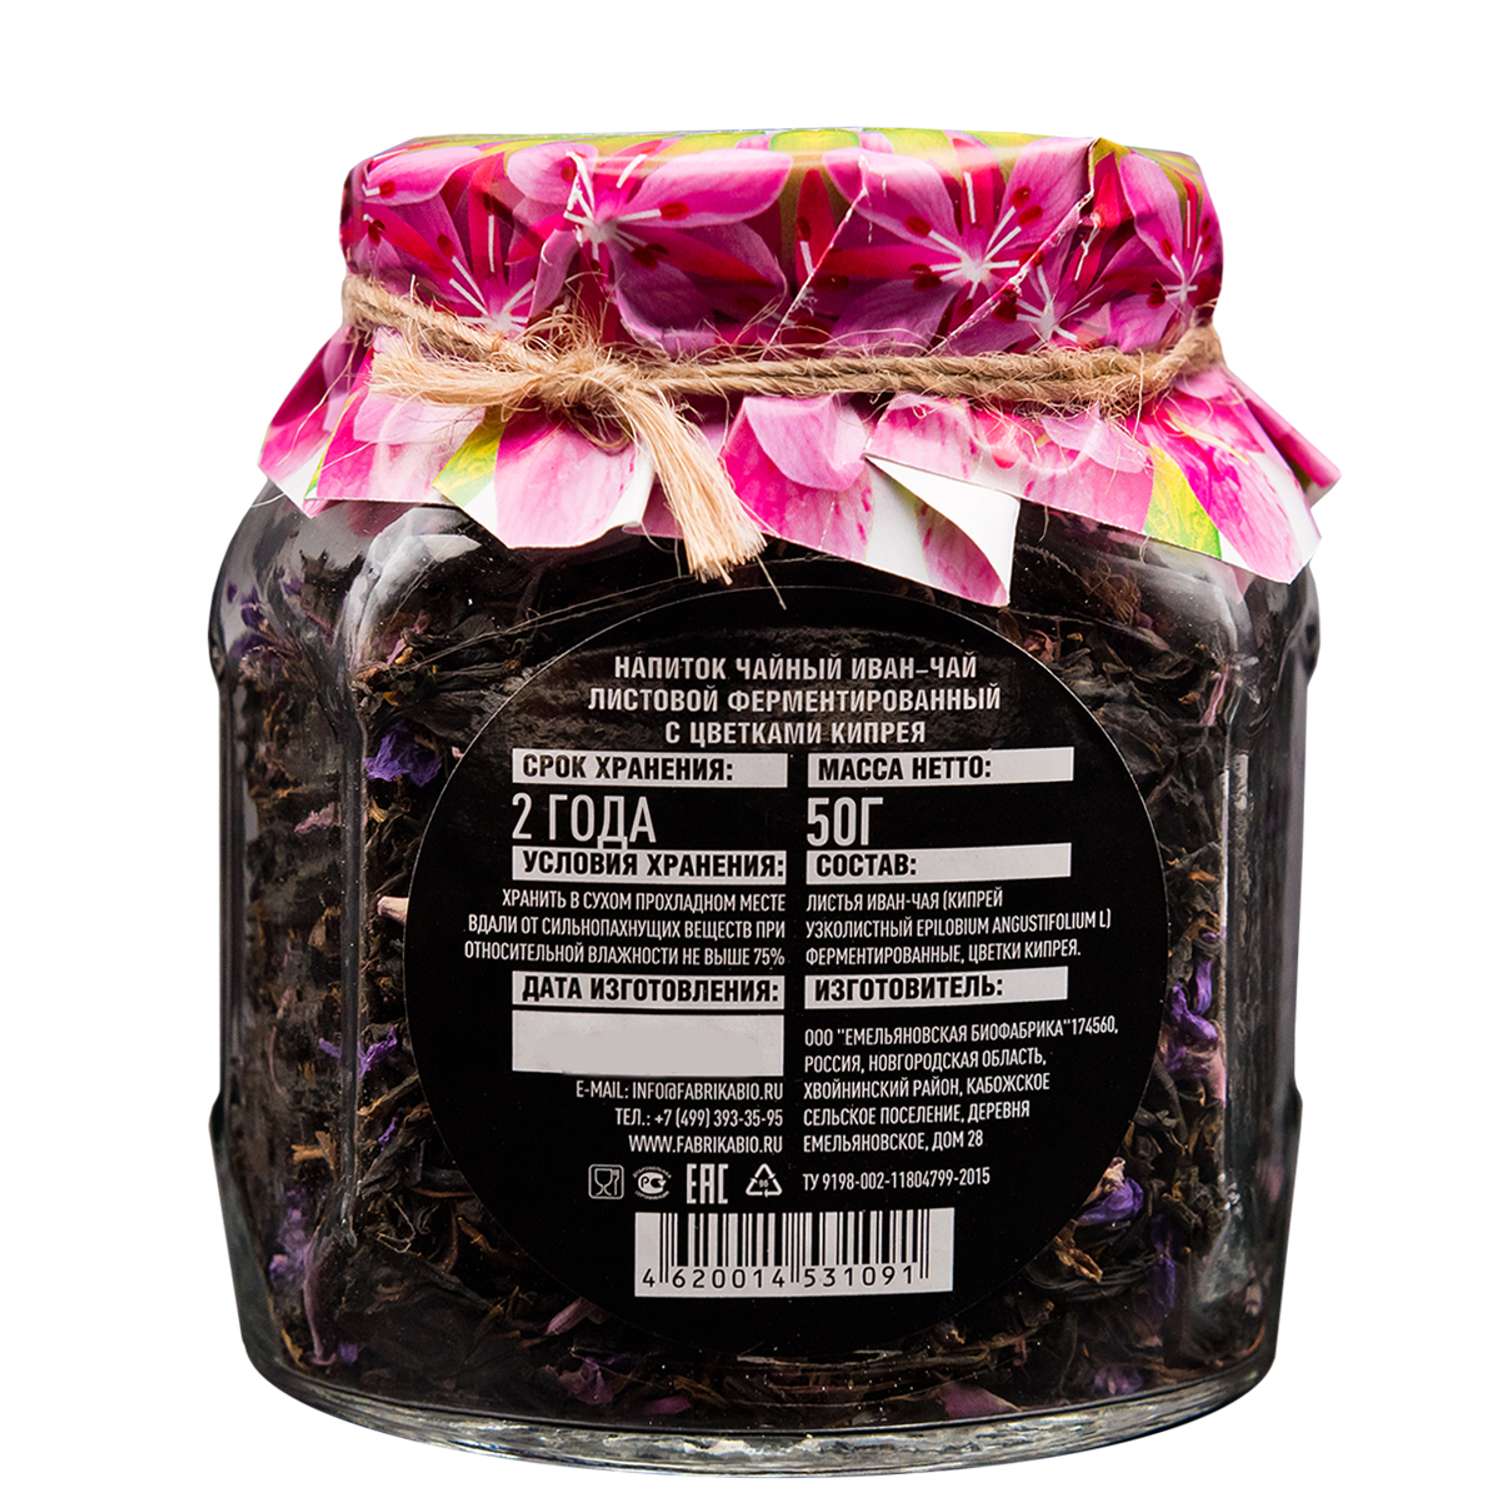 Чай Емельяновская Биофабрика иван-чай в стеклянной банке с цветами кипрея ферментированный 50 гр. в подарочной упаковке - фото 4